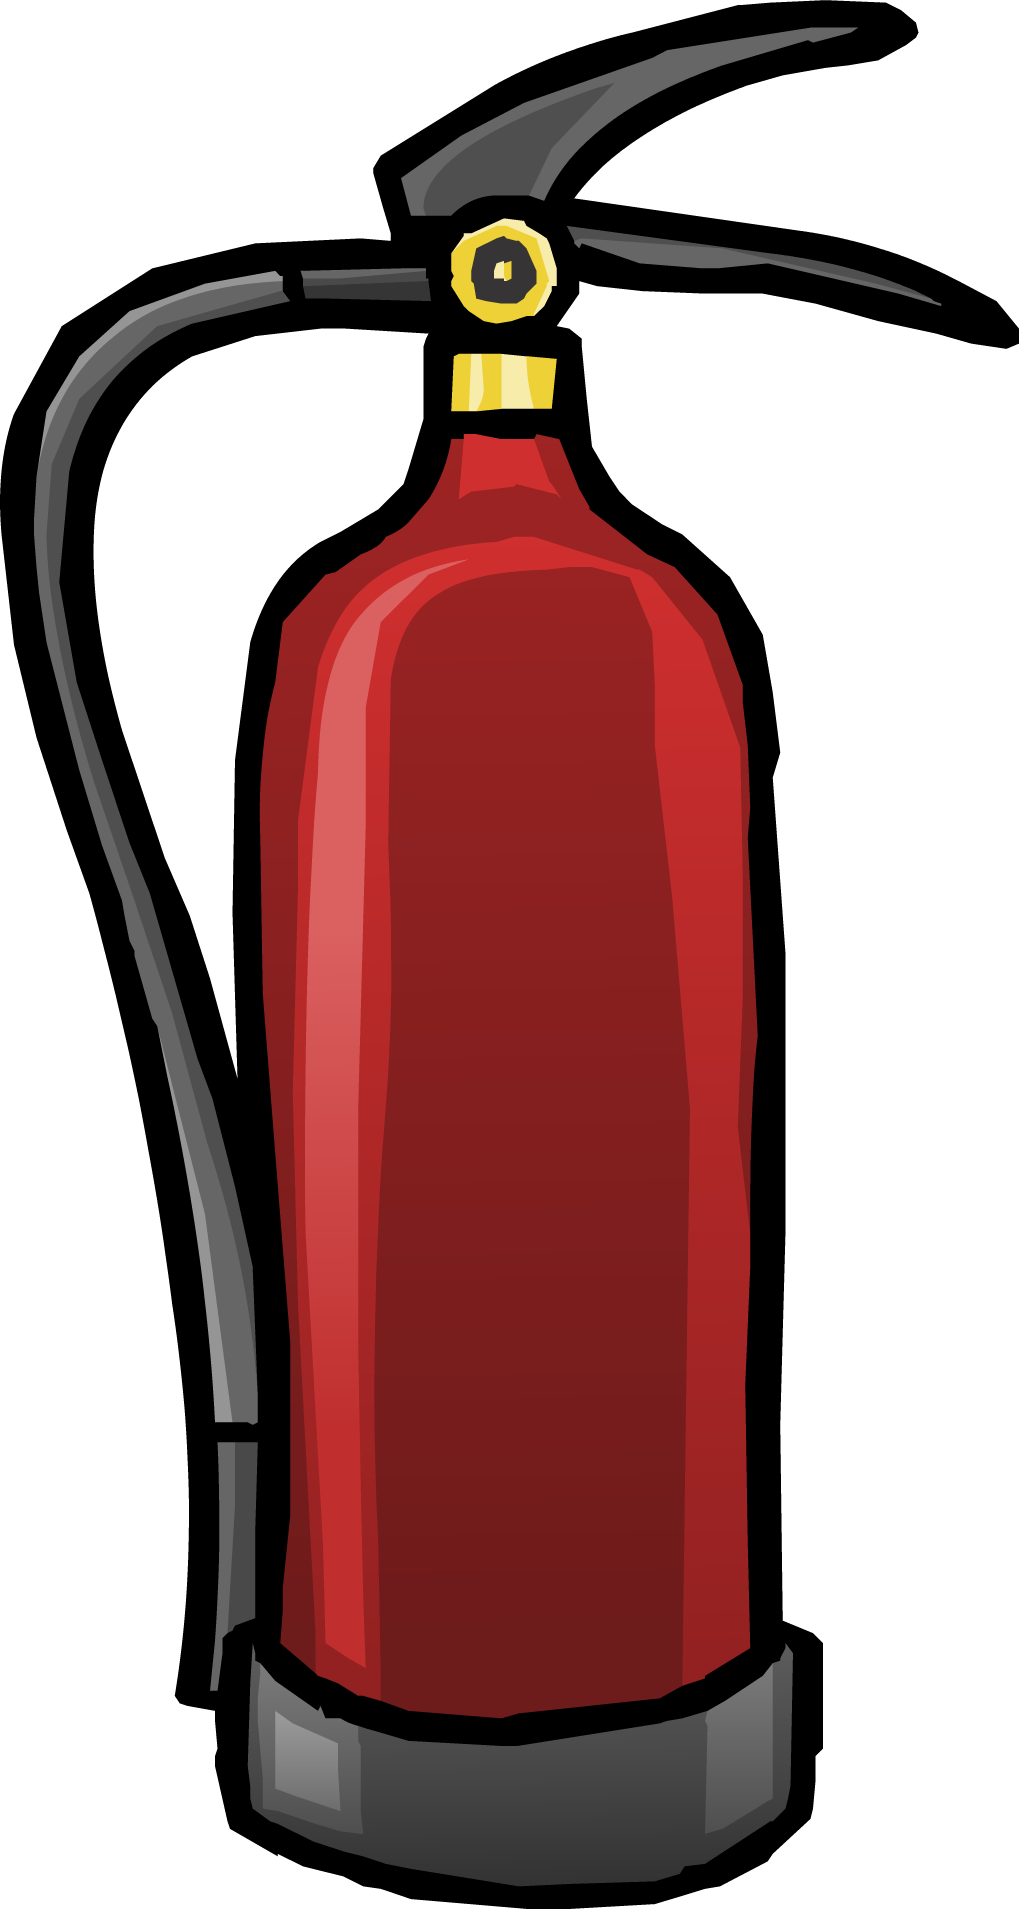 Extinguisher Transparent Image